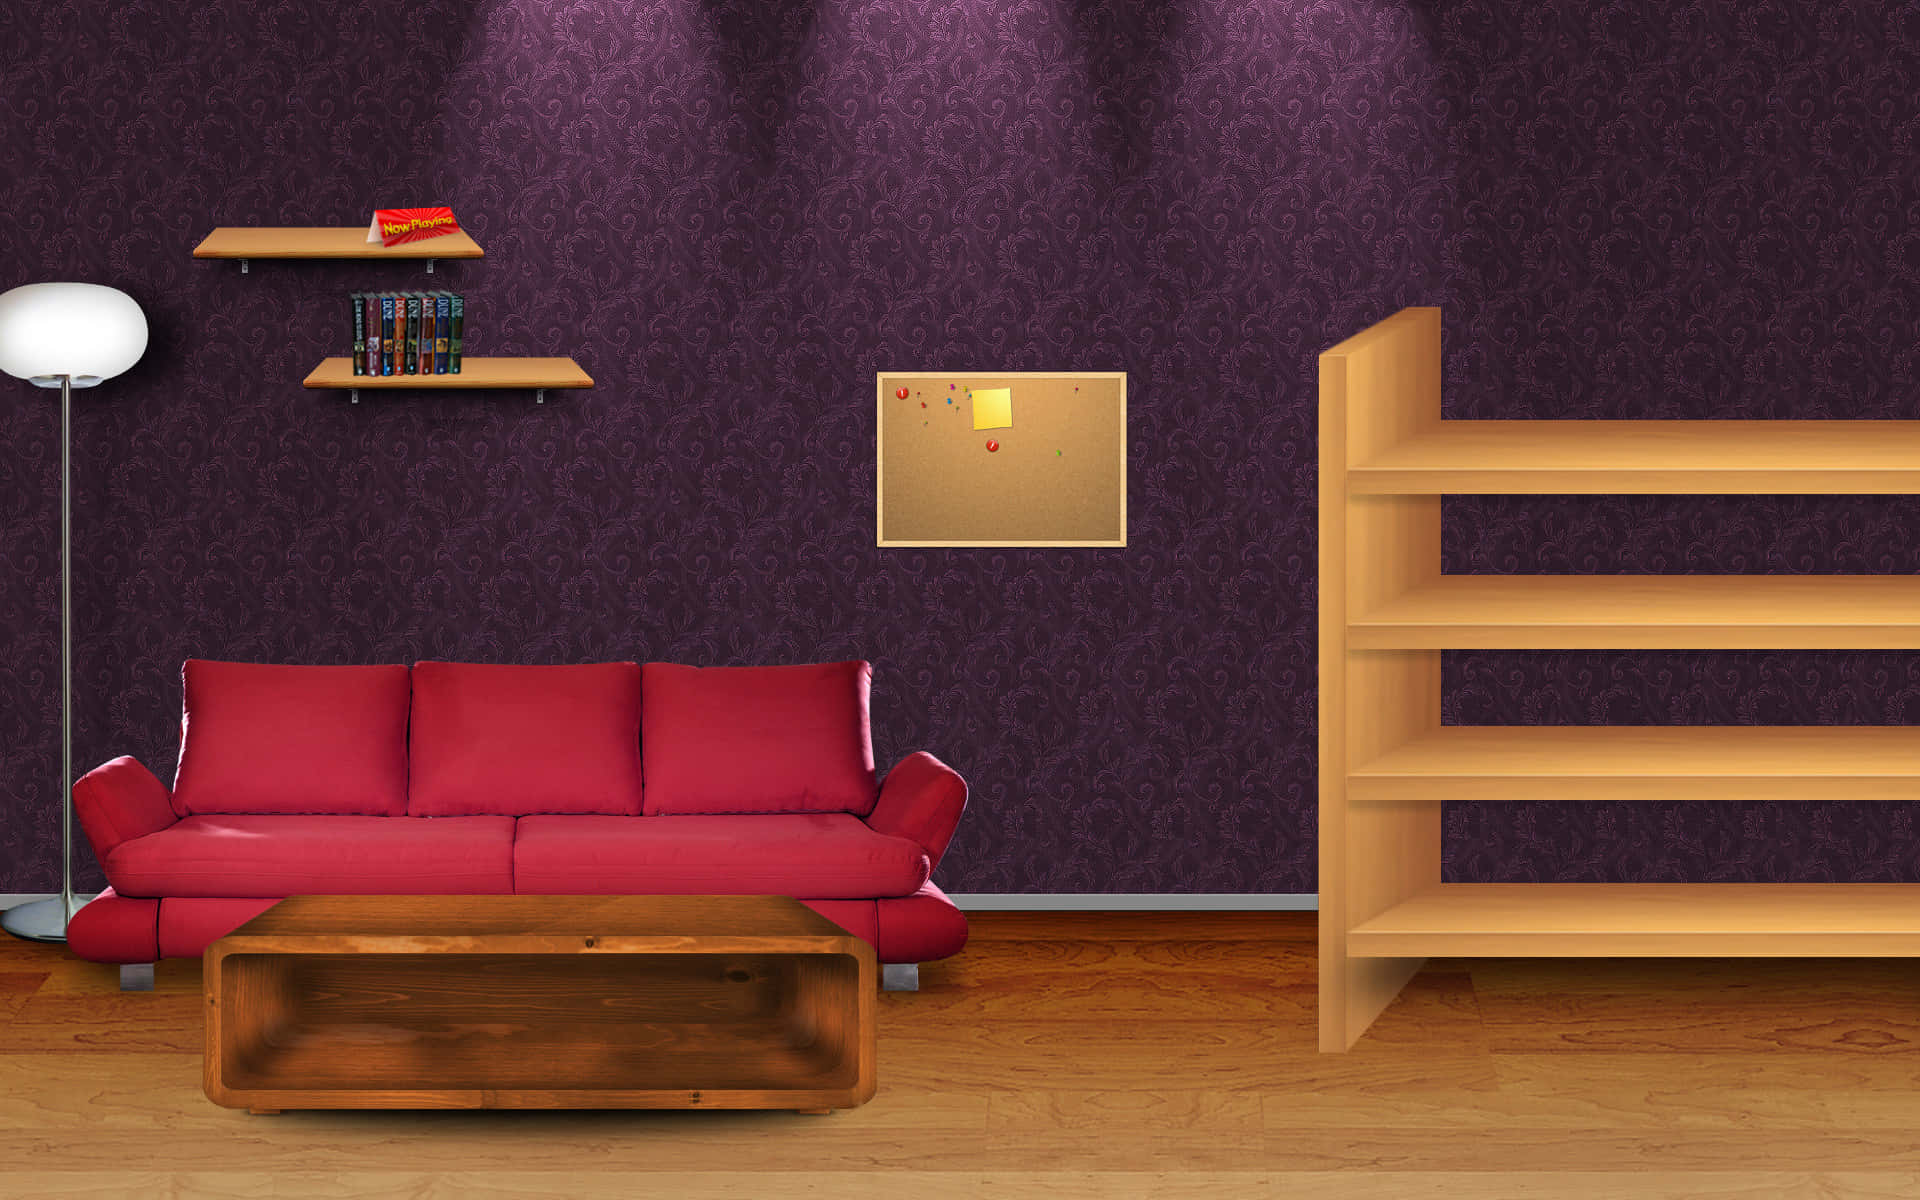 Hintergrundmit Zimmer, Sofa Und Bücherregal